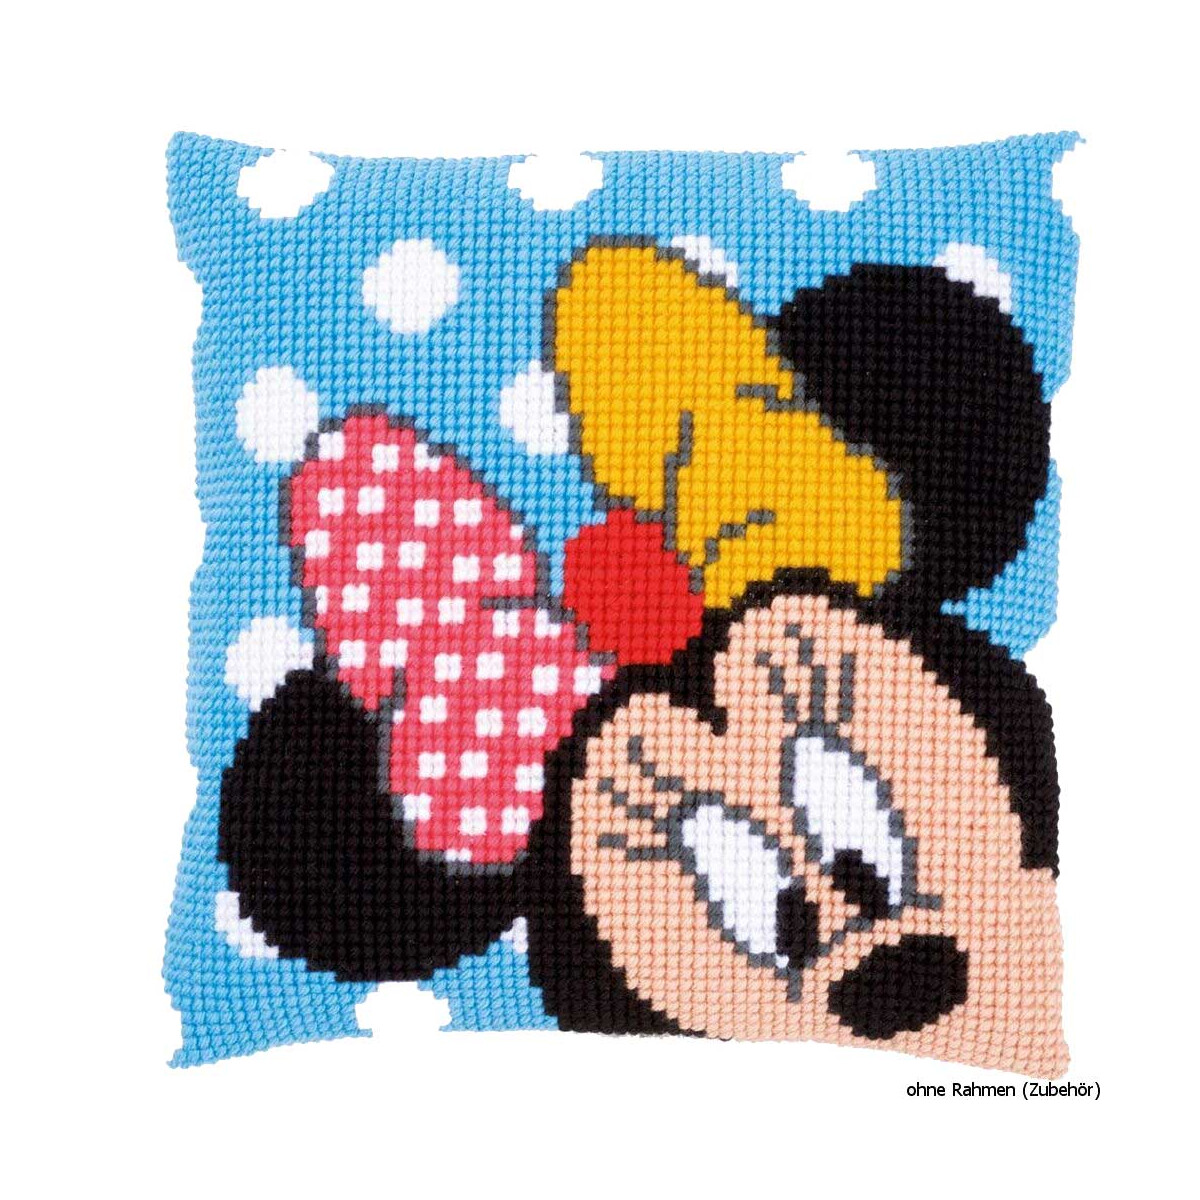 Kit Point de Croix Minnie - Collection Disney Minnie Mouse - Vervaco